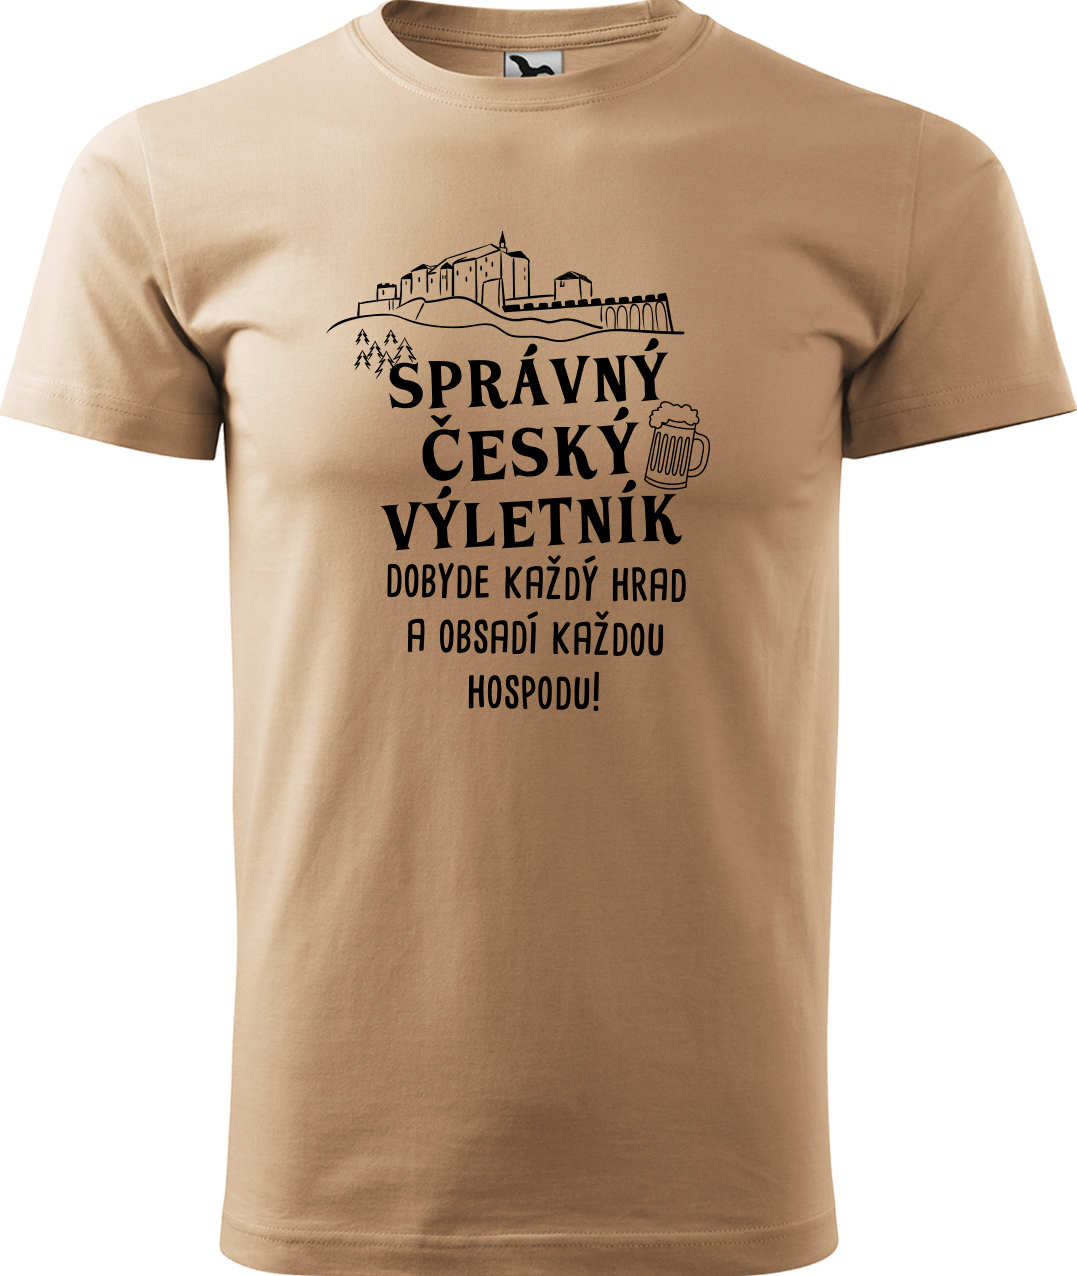 Pánské cestovatelské tričko - Správný český výletník Velikost: M, Barva: Písková (08), Střih: pánský